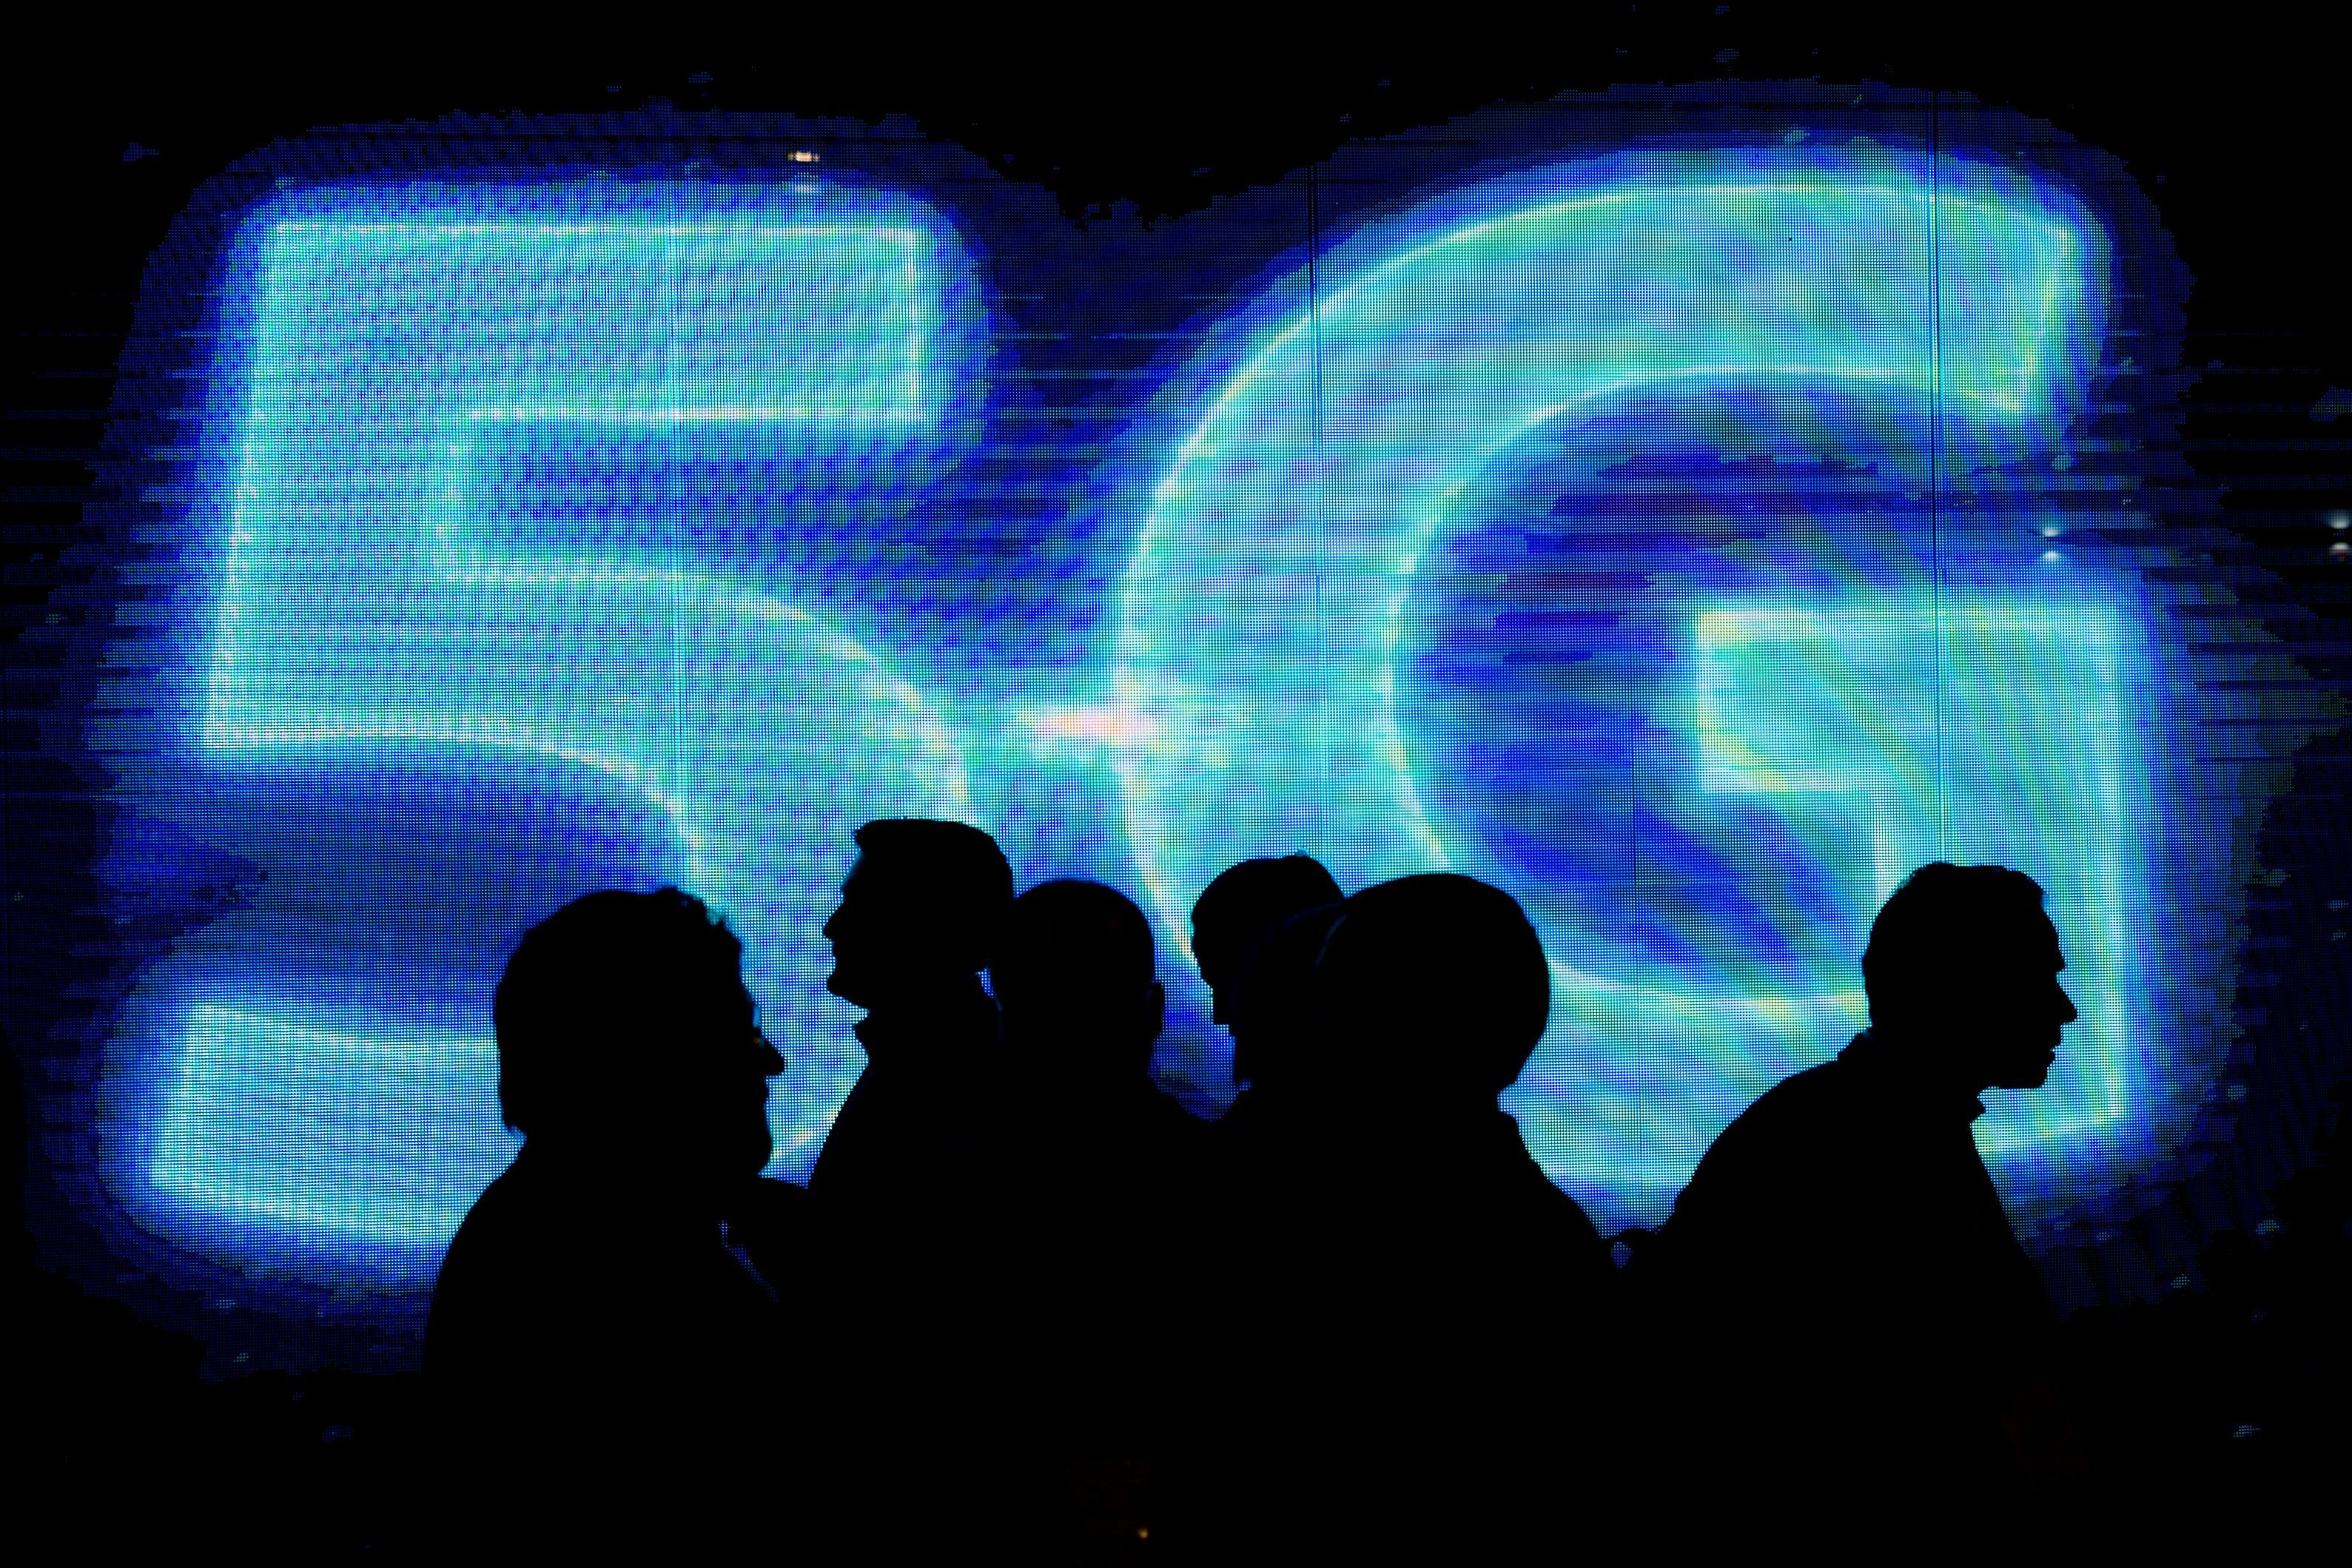         5G hứa hẹn sẽ thay đổi Internet như chúng ta biết ... nhưng nó có an toàn không?